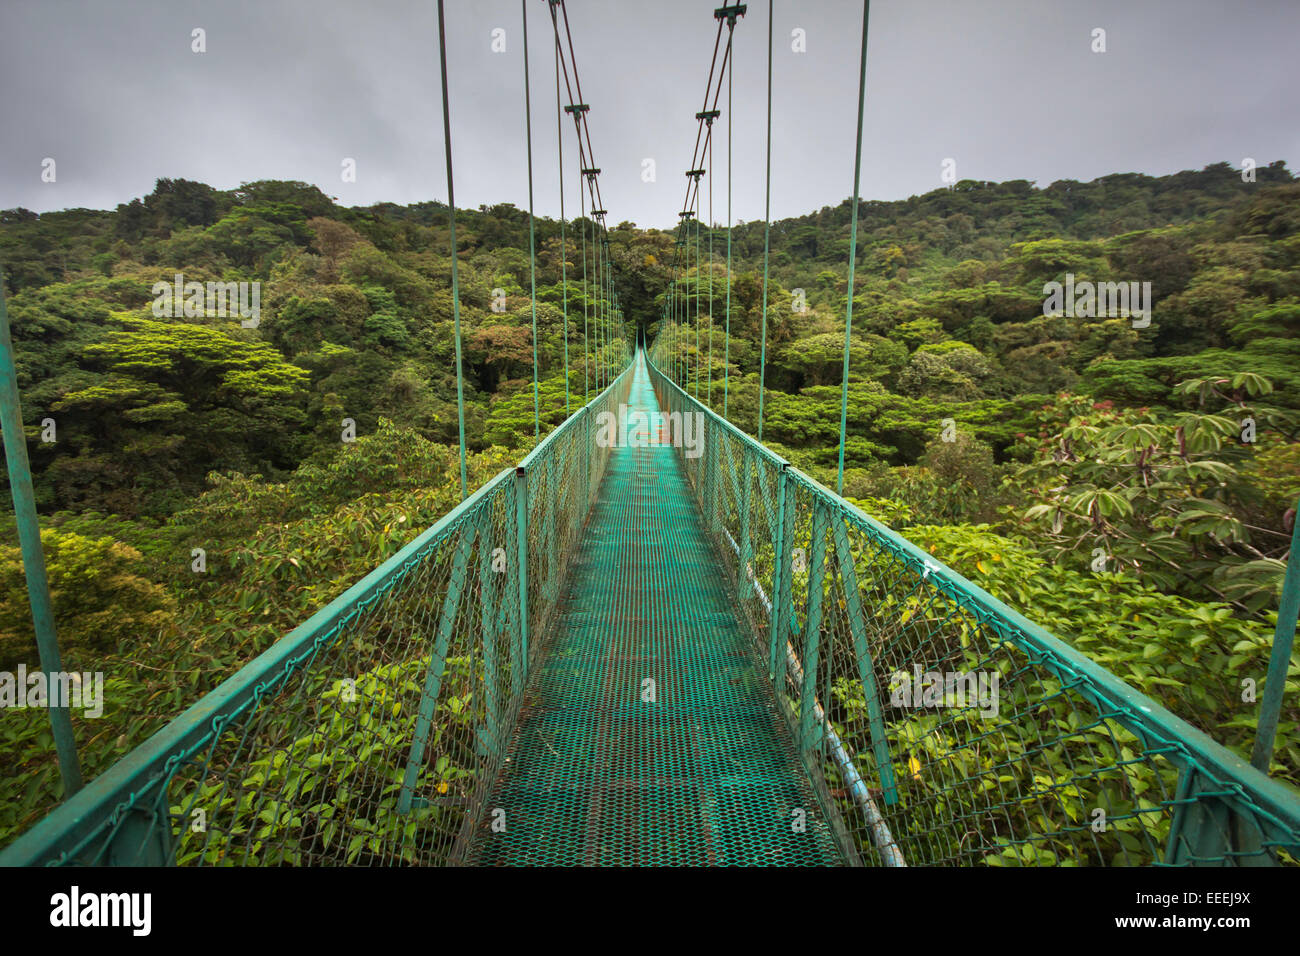 Alto puente colgante sobre el bosque nuboso de Costa Rica Foto de stock